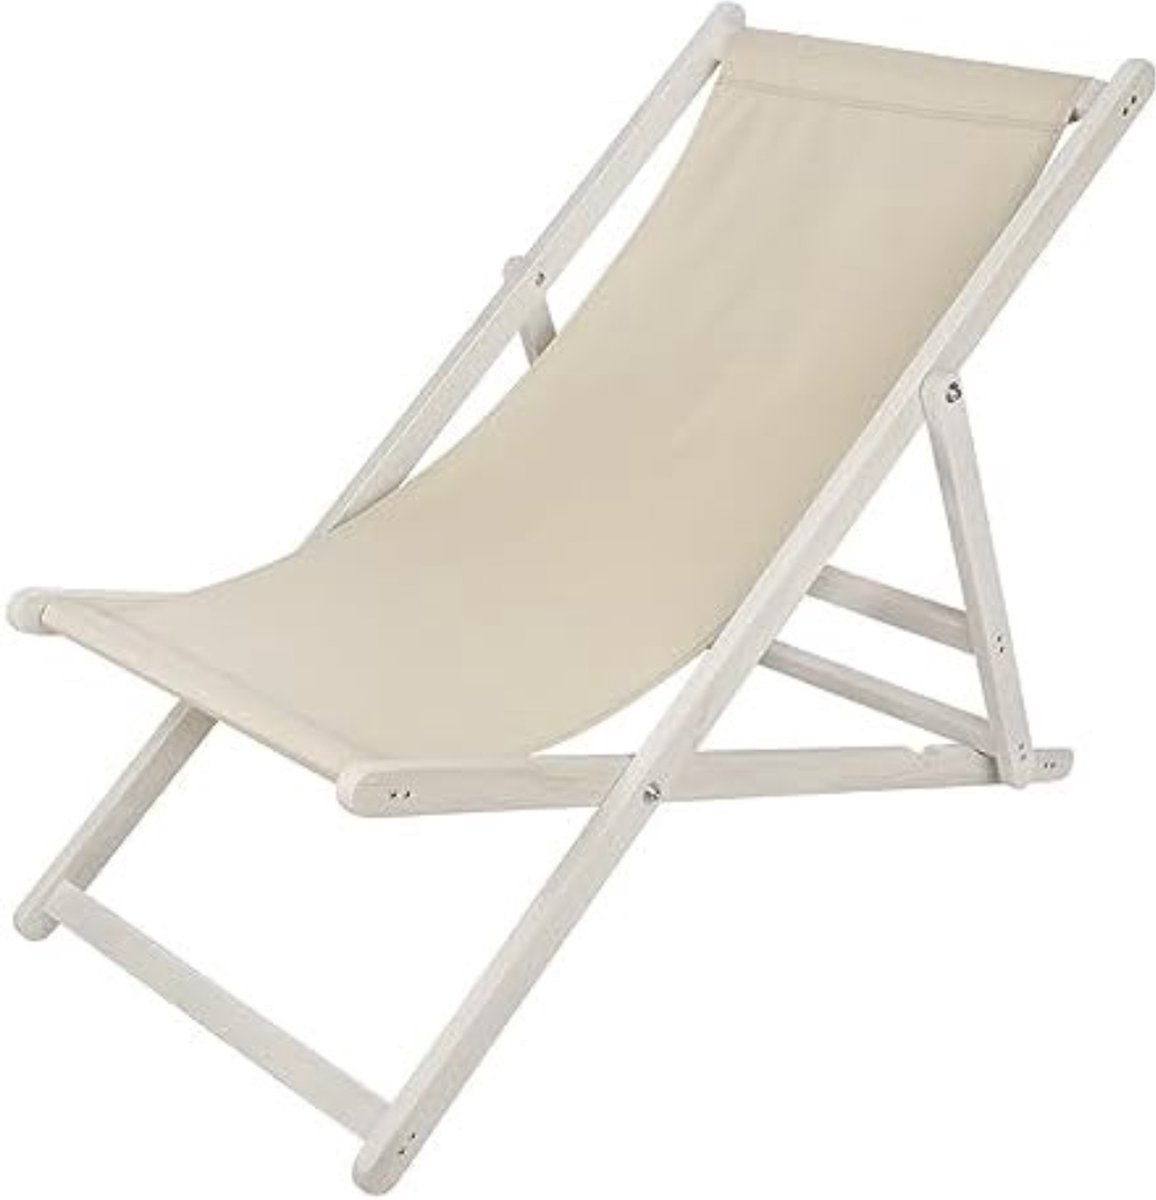 Strandstoel Inklapbaar - Strandstoel Opvouwbaar - Strandstoel Volwassenen - Strandstoel Verstelbaar - Beige